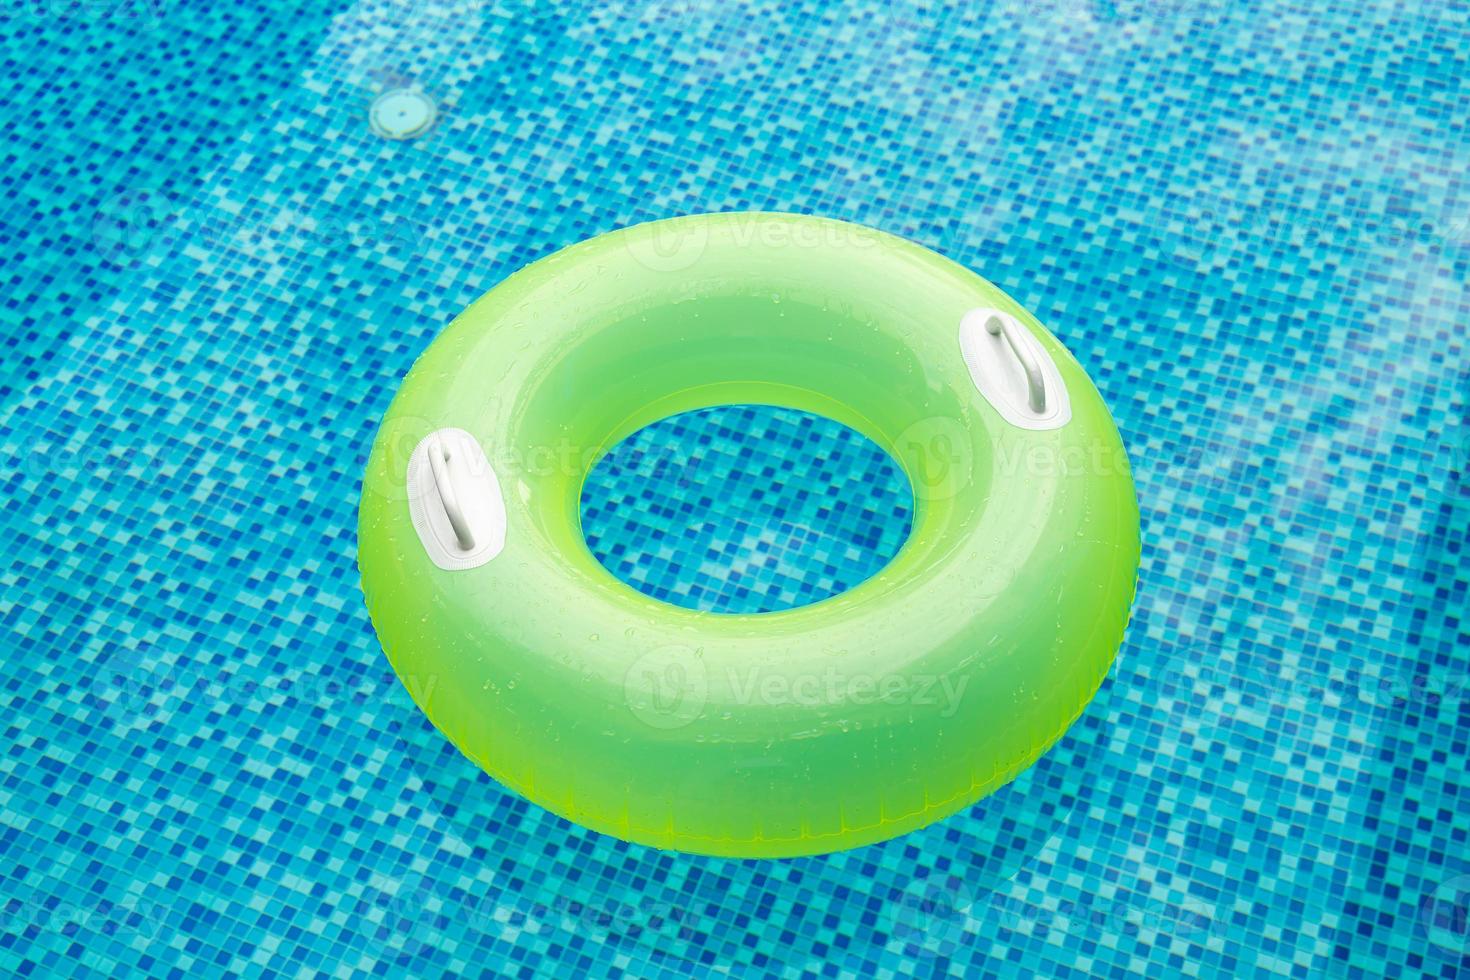 anillo de natación en piscina azul foto